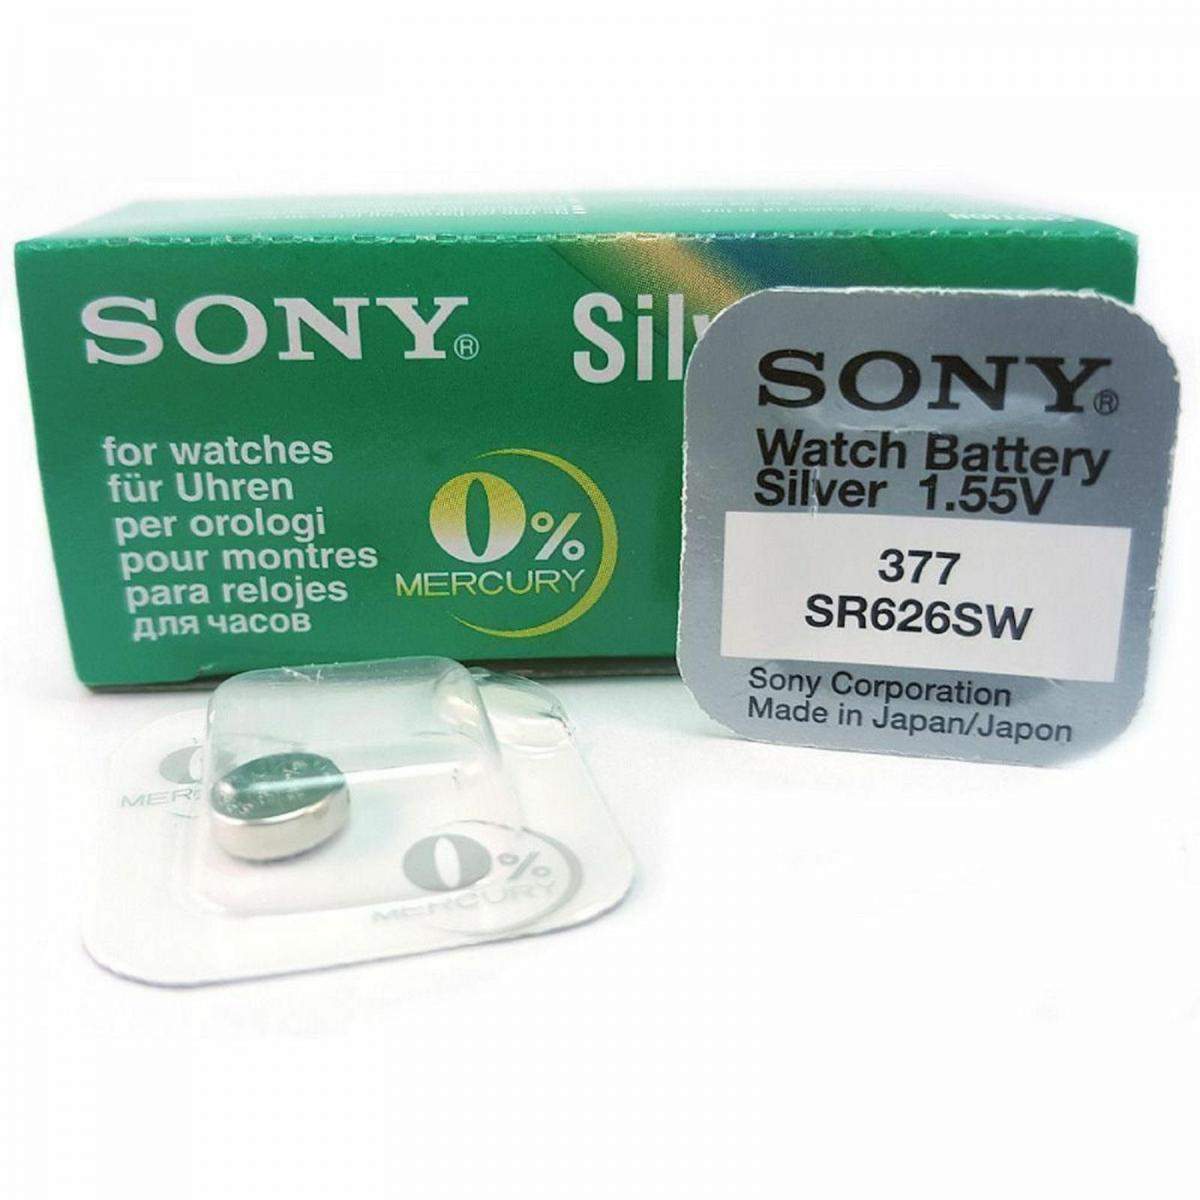 Pilas de boton Sony bateria original Oxido de Plata SR626SW blister 2X  Unidades